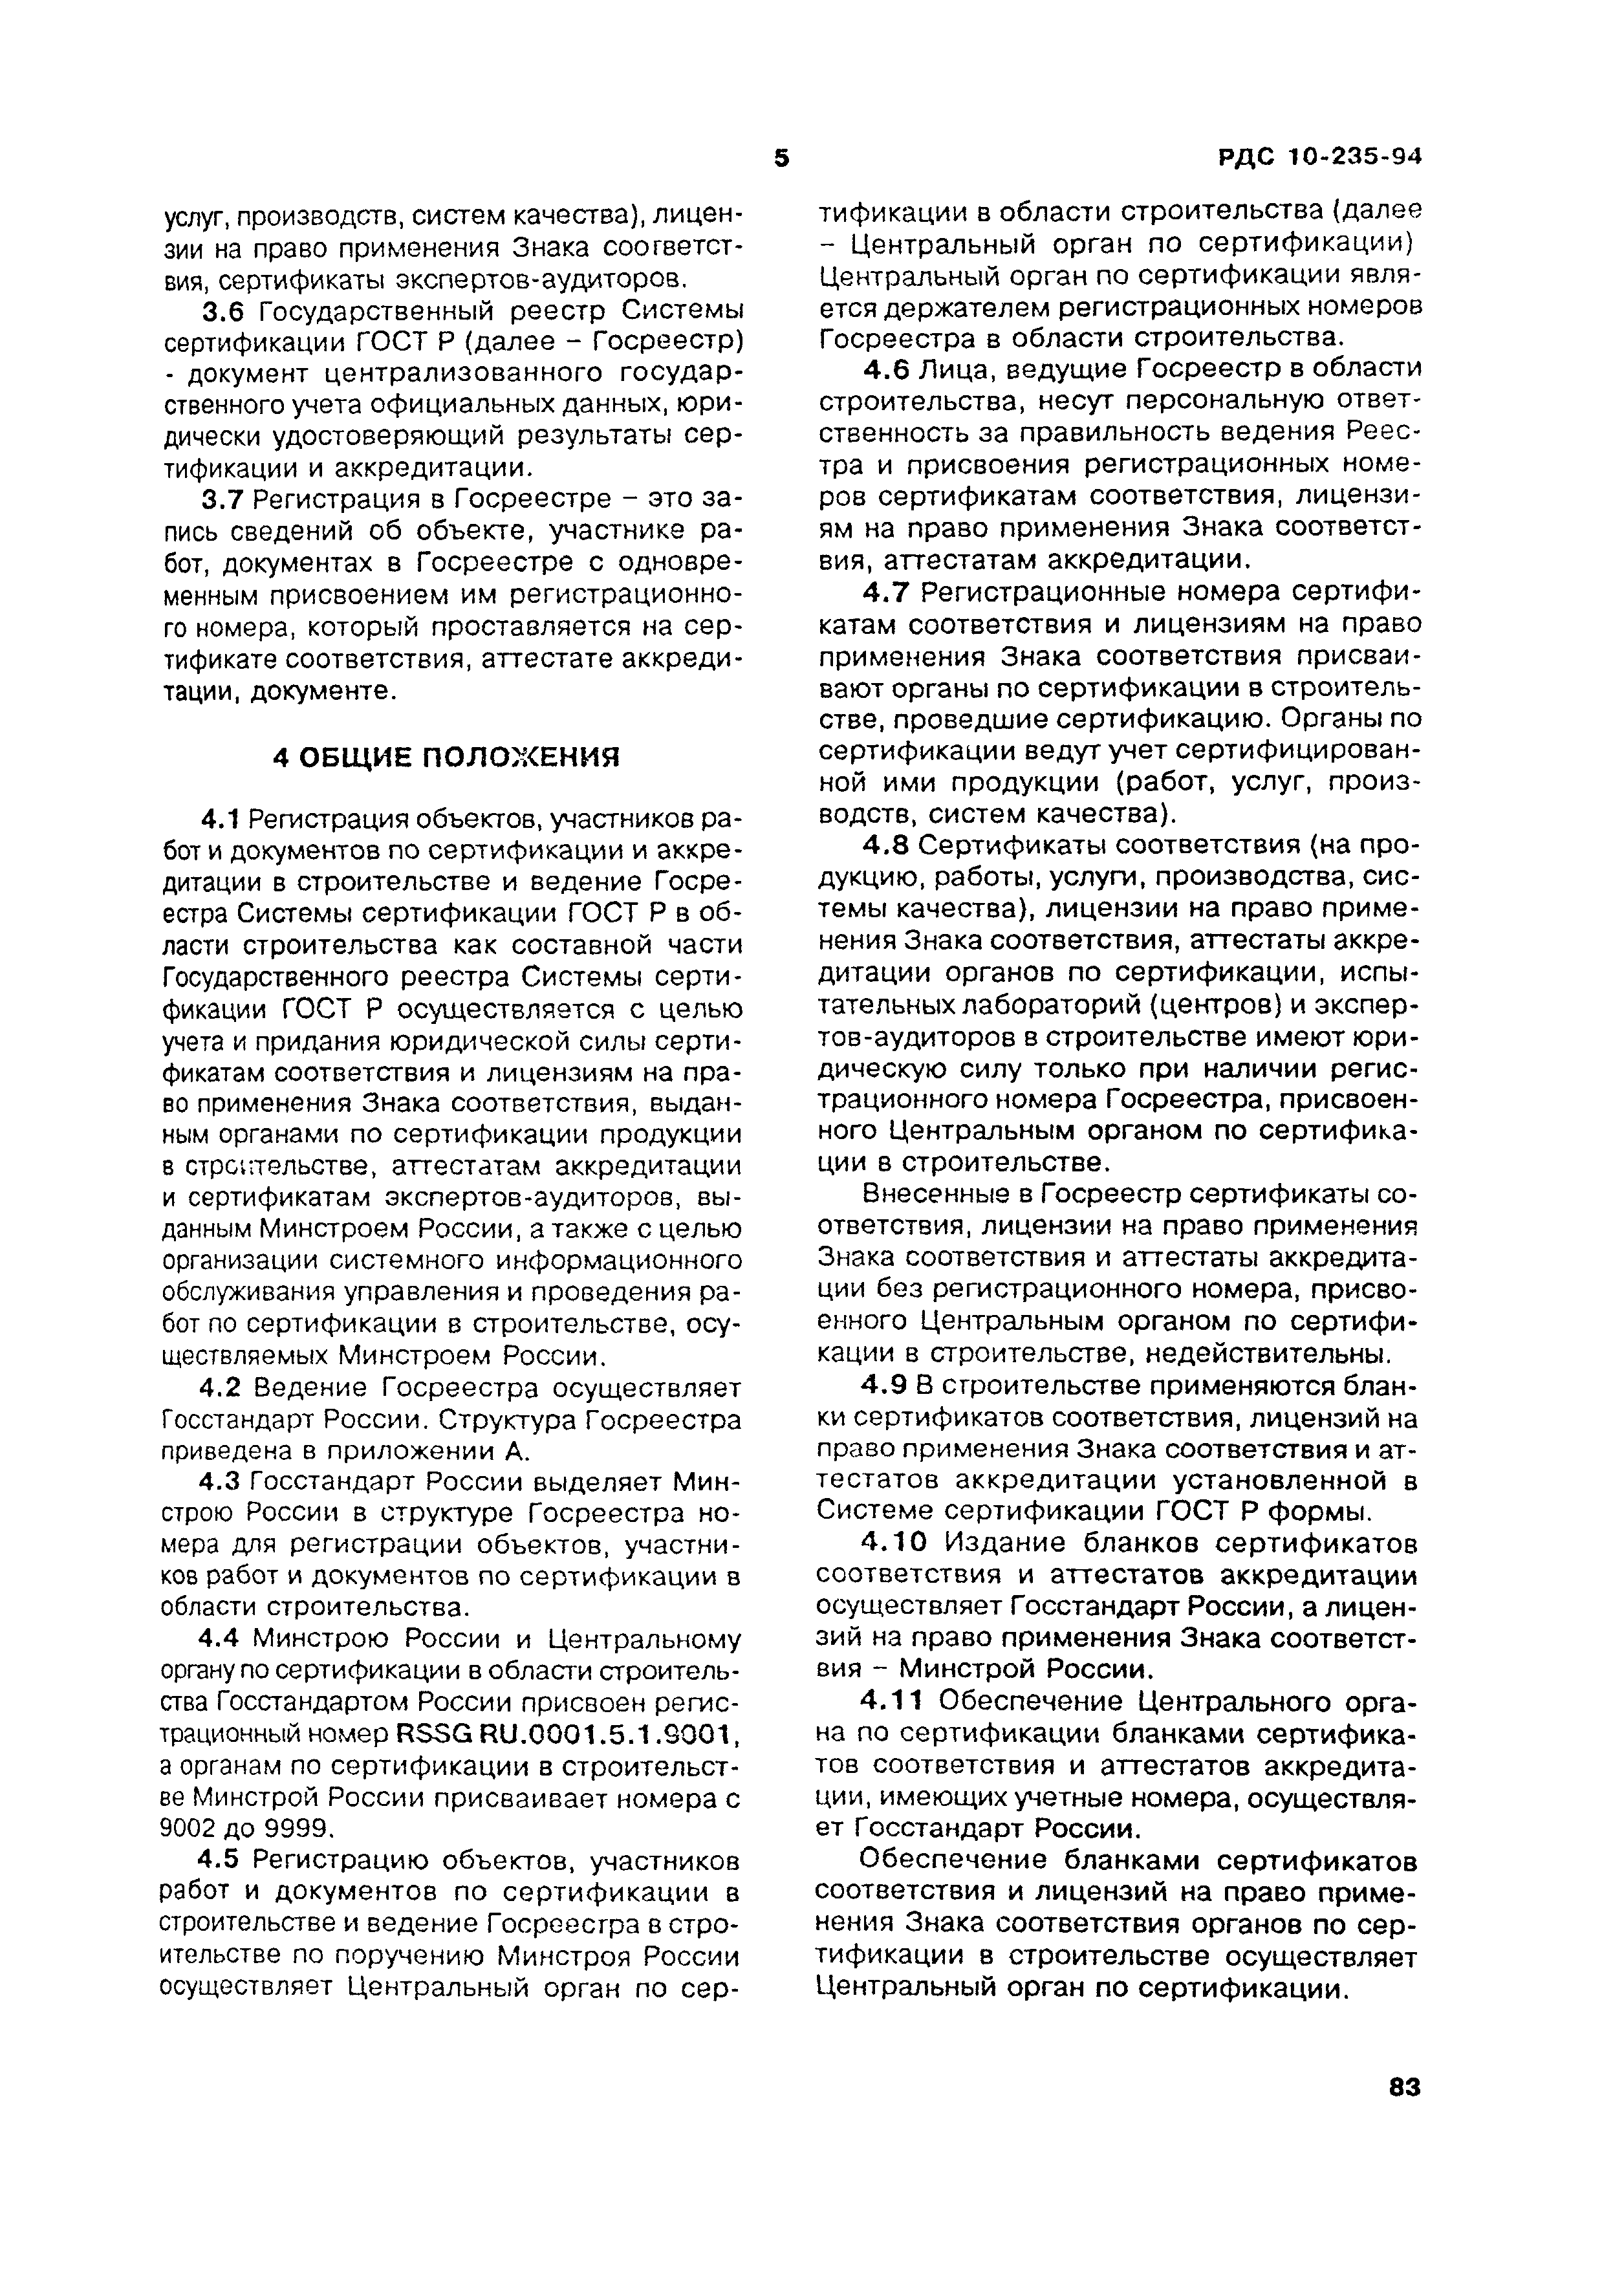 РДС 10-235-94